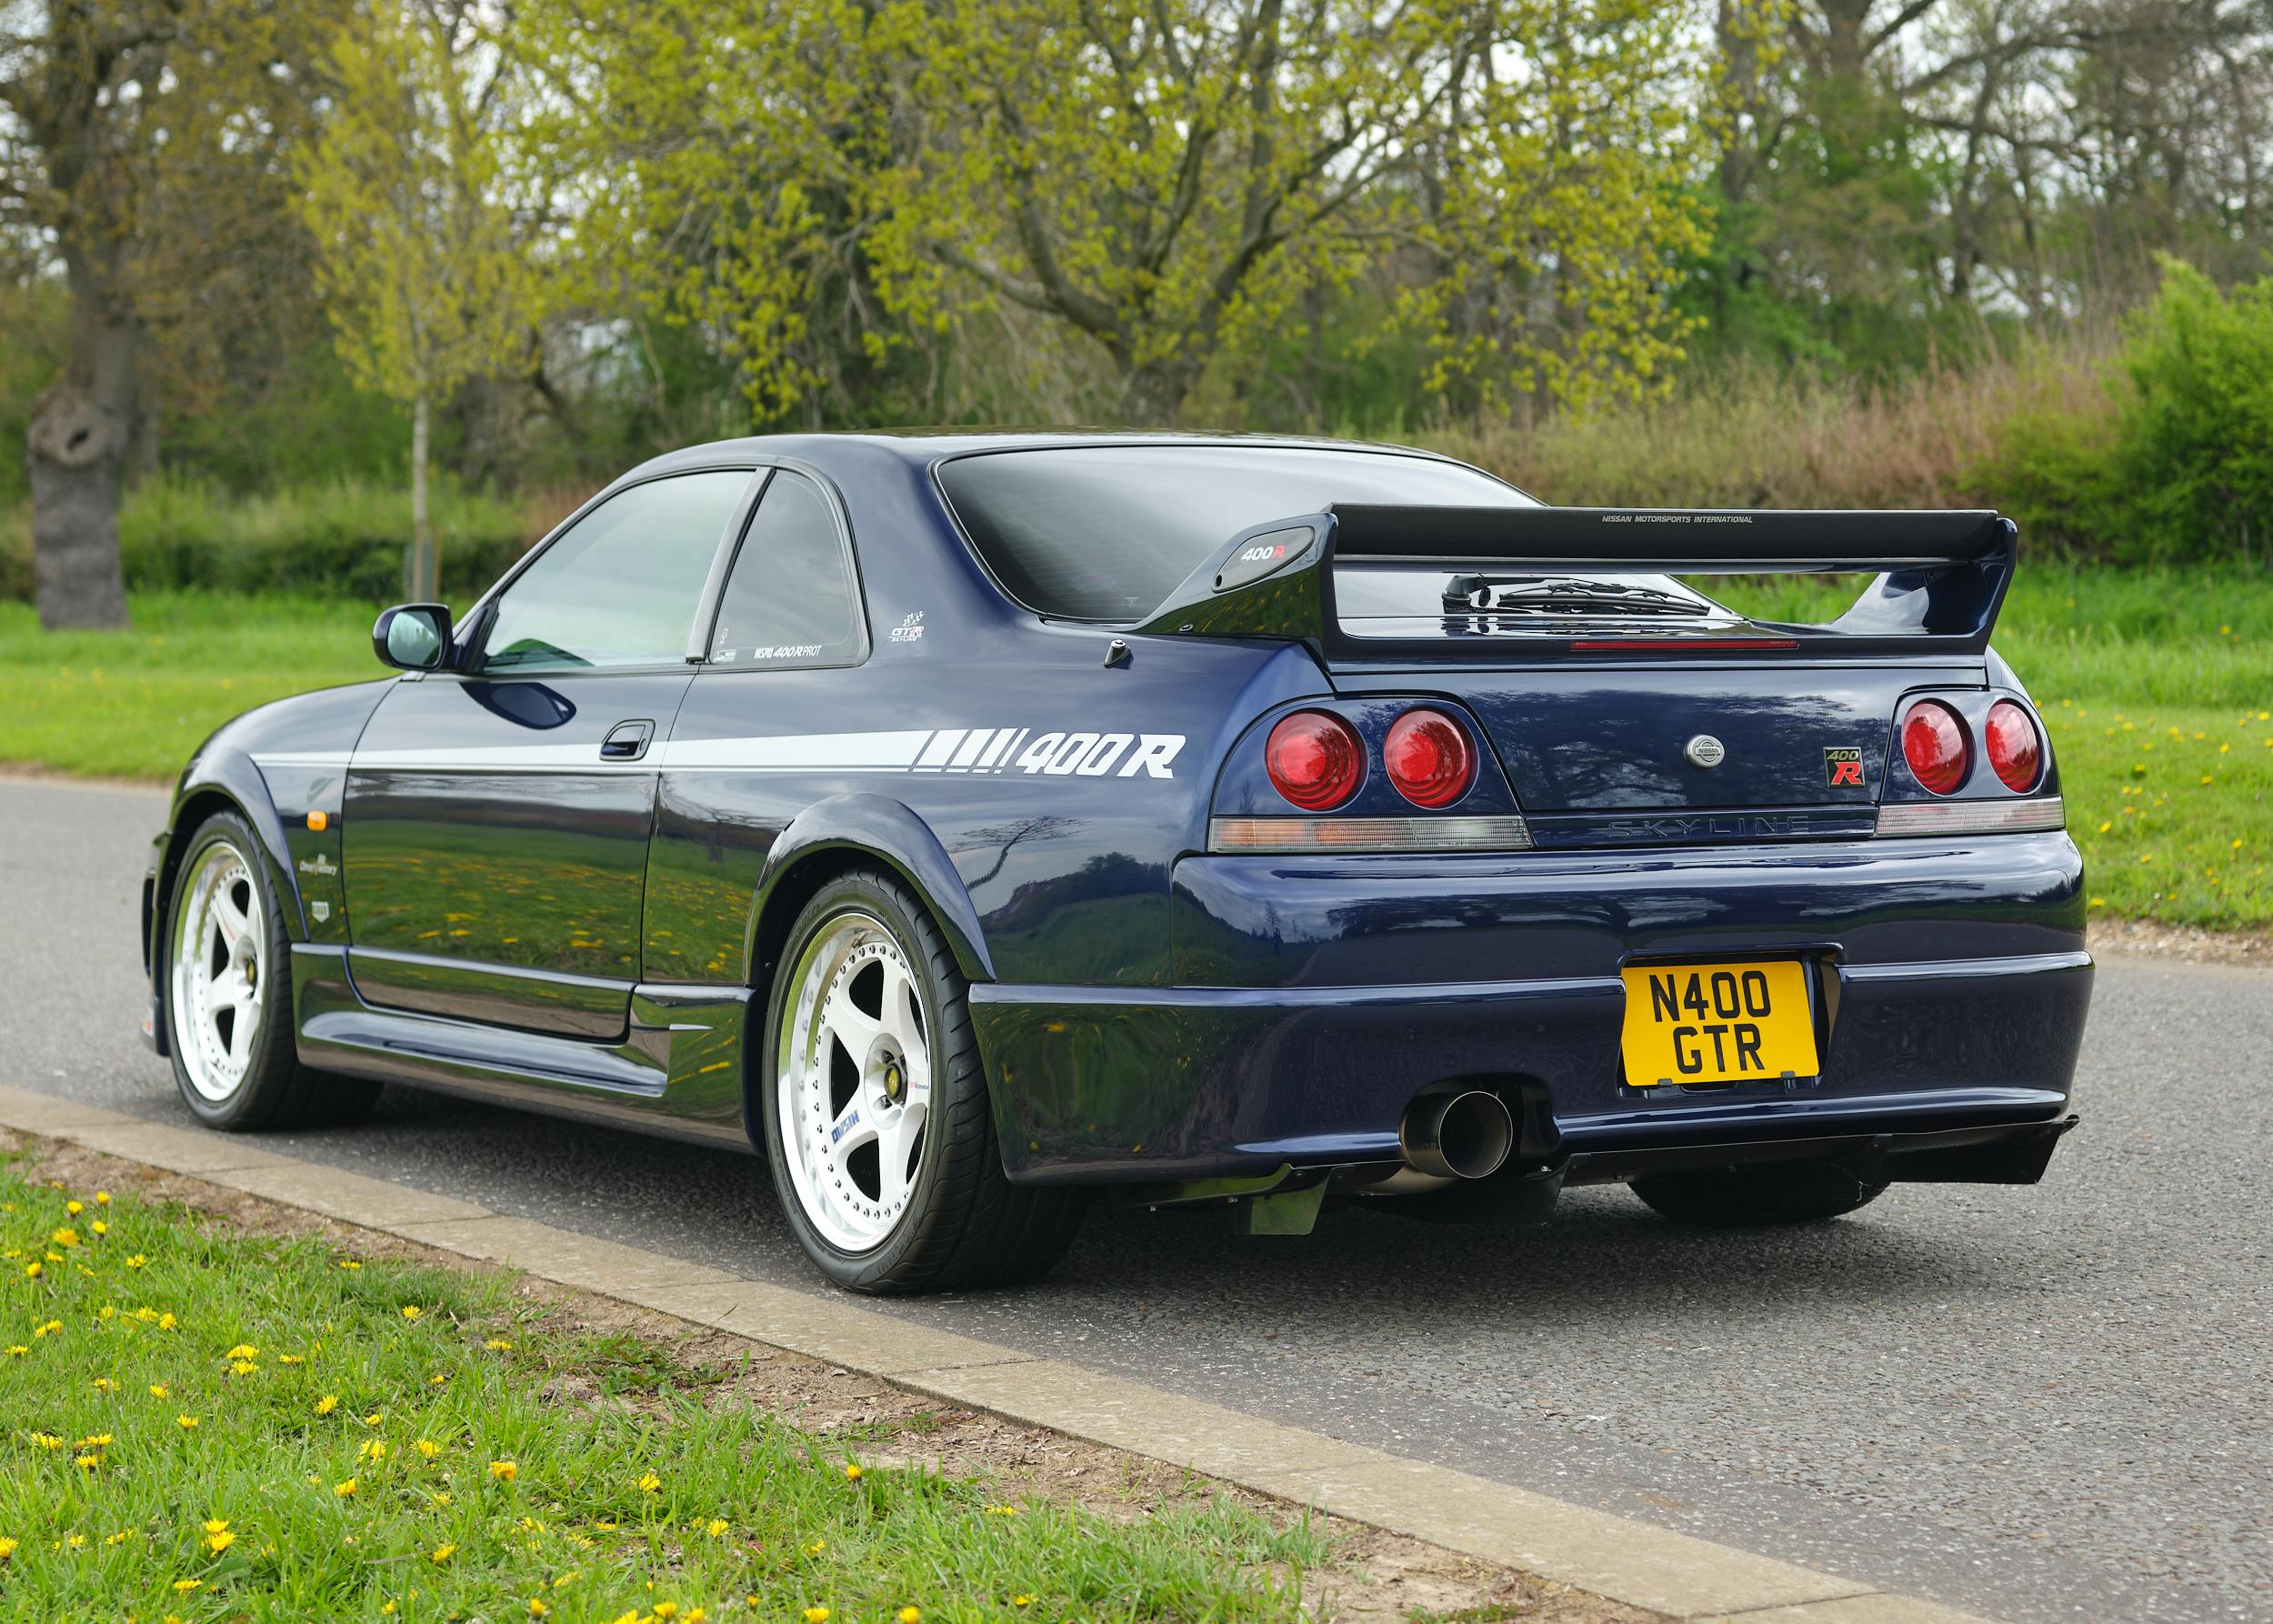 1996 Nissan Skyline R33 GT-R NISMO 400R rear three quarter